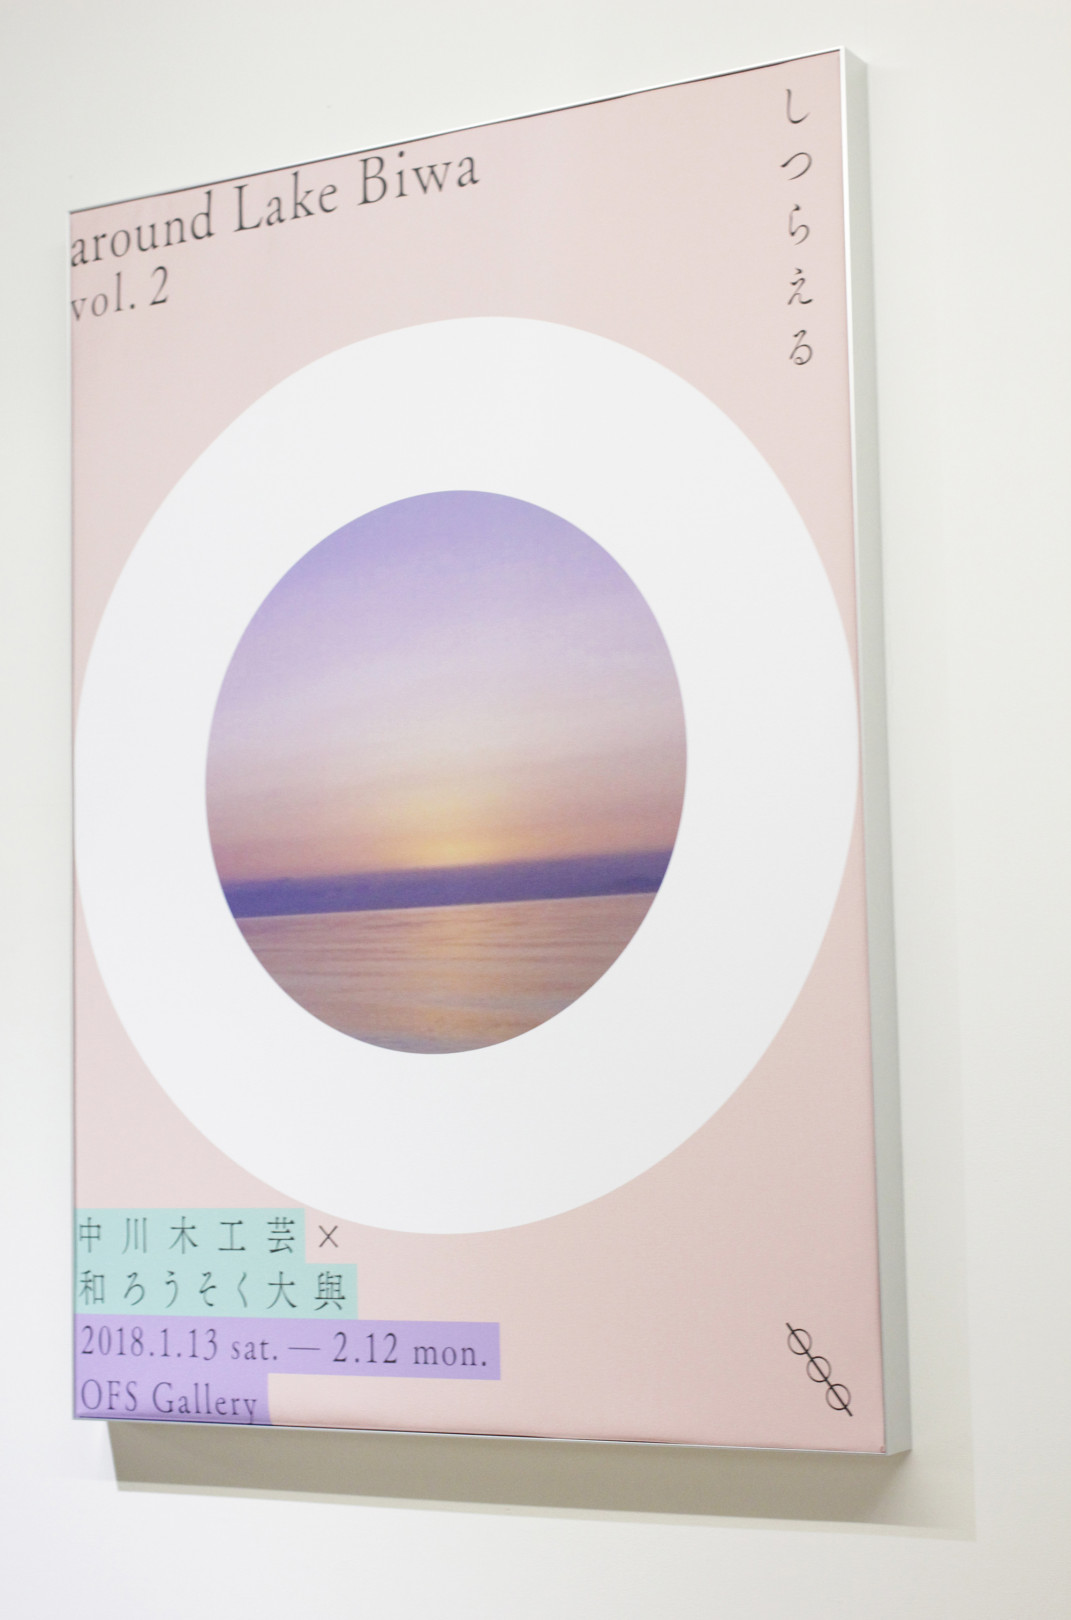 朝焼けの美しい琵琶湖を白く丸で囲んだ「中川木工芸×和ろうそく大與×KIKOFのしつらえ around Lake Biwa vol.2」のポスター